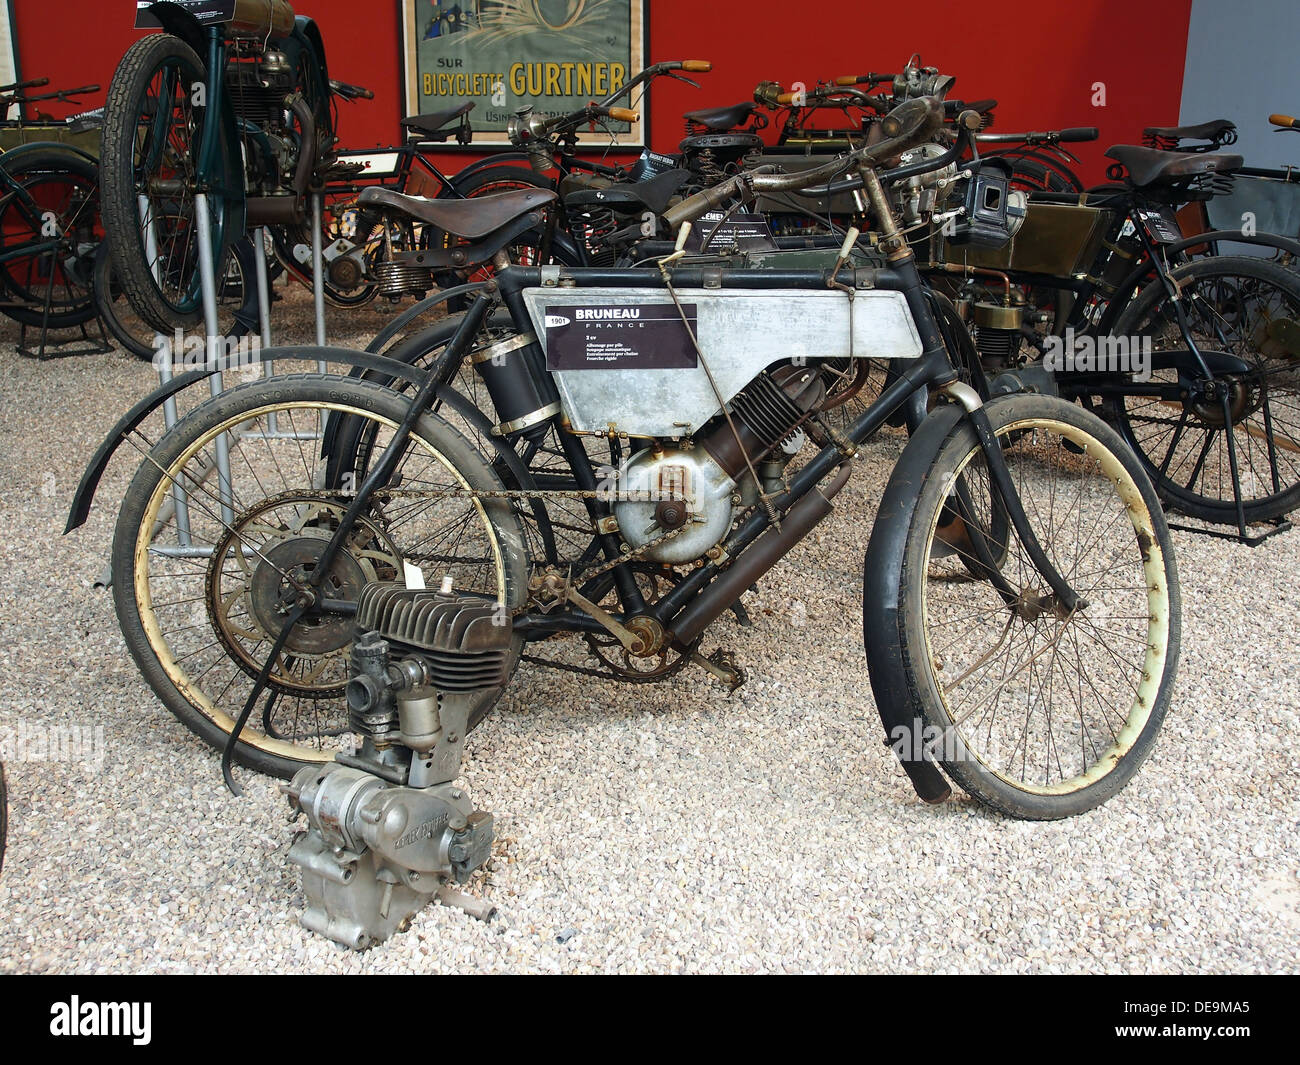 1901 Bruneau 2cv, Mus e de la Moto et du V lo, Amneville, France, 002 Stock  Photo - Alamy